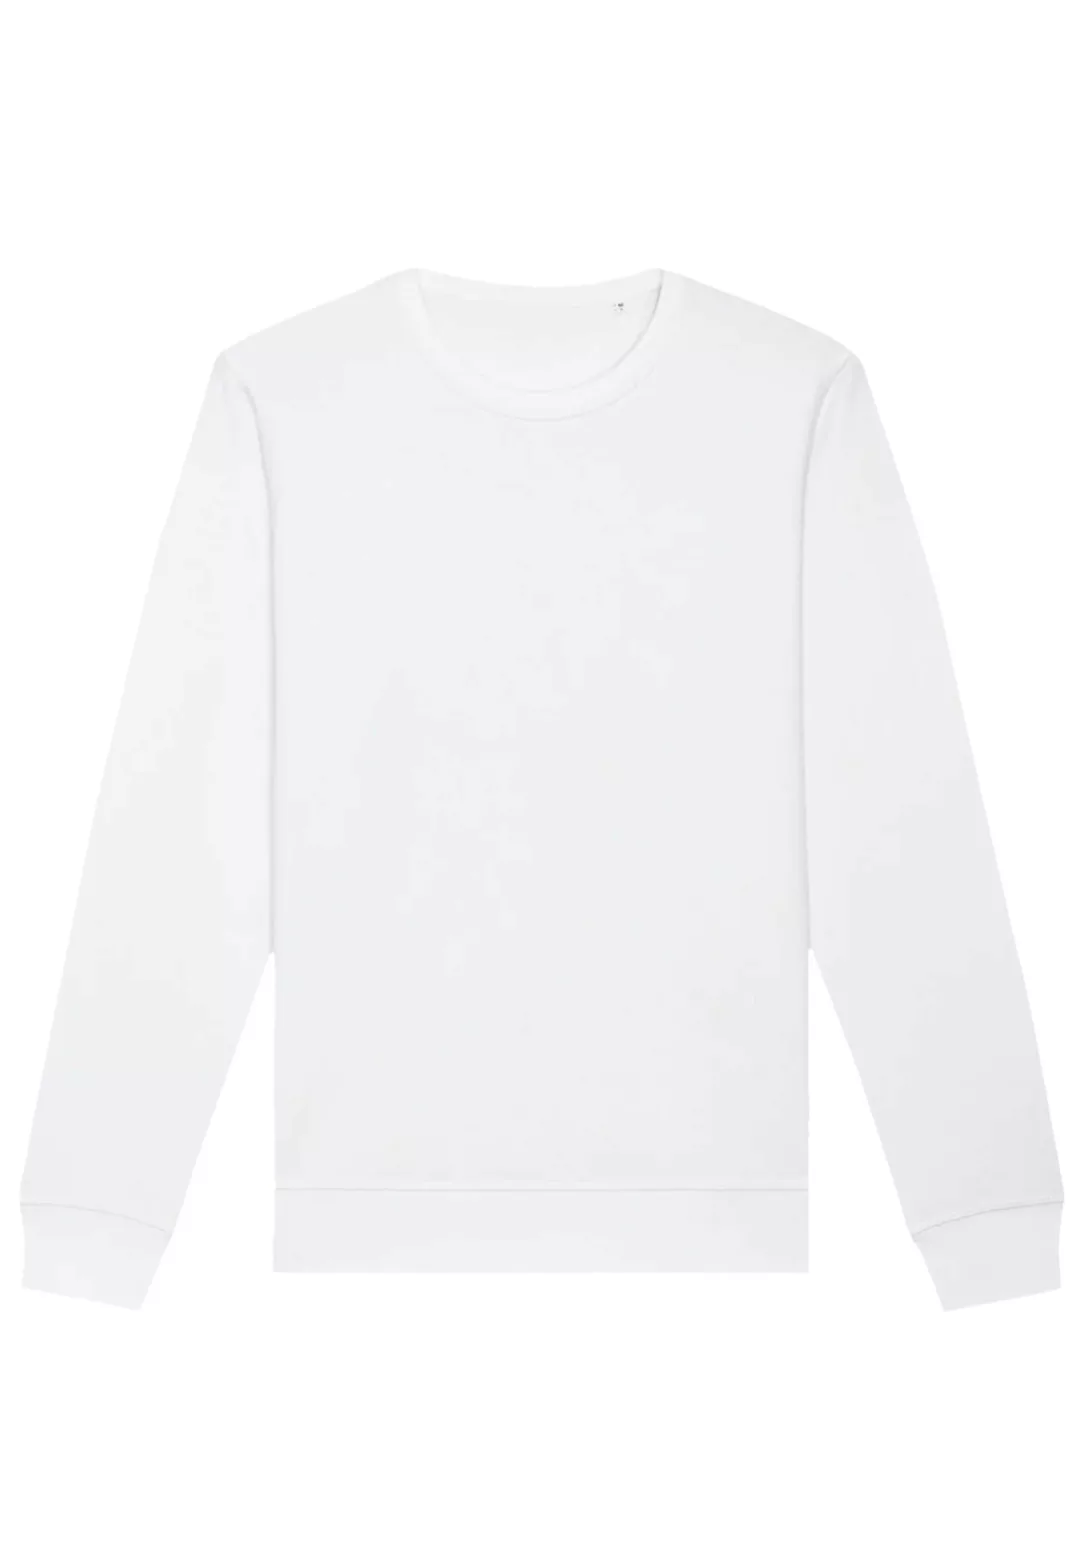 F4NT4STIC Sweatshirt "The Bronx" günstig online kaufen